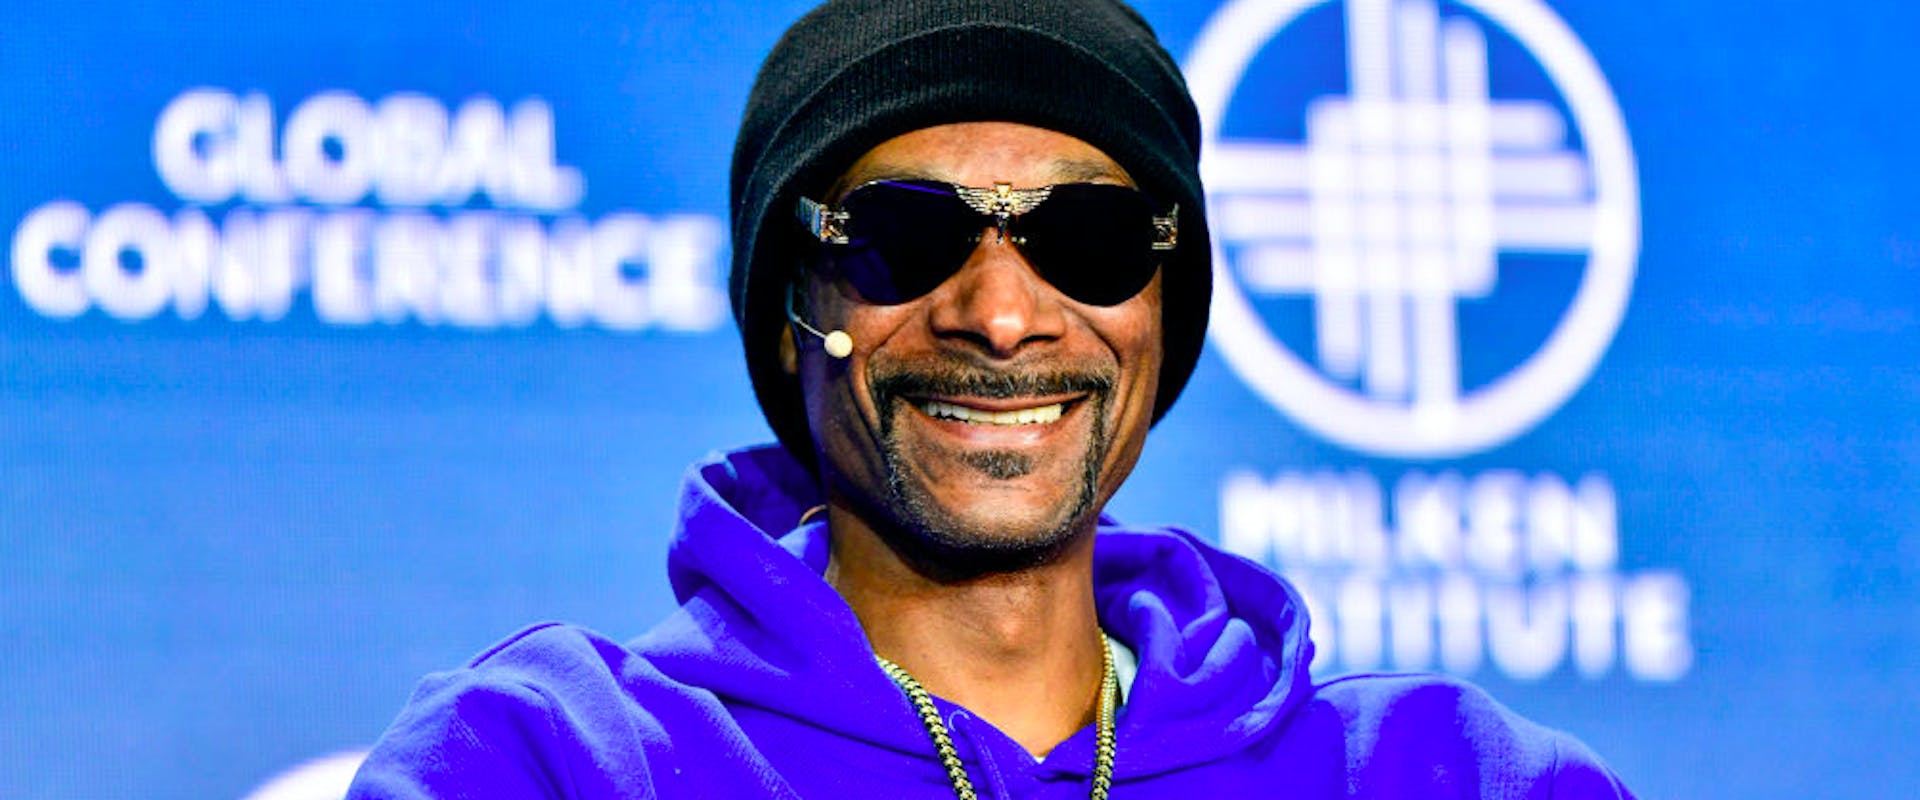 Call of Duty' is adding Nicki Minaj, Snoop Dogg, and 21 Savage as playable  characters